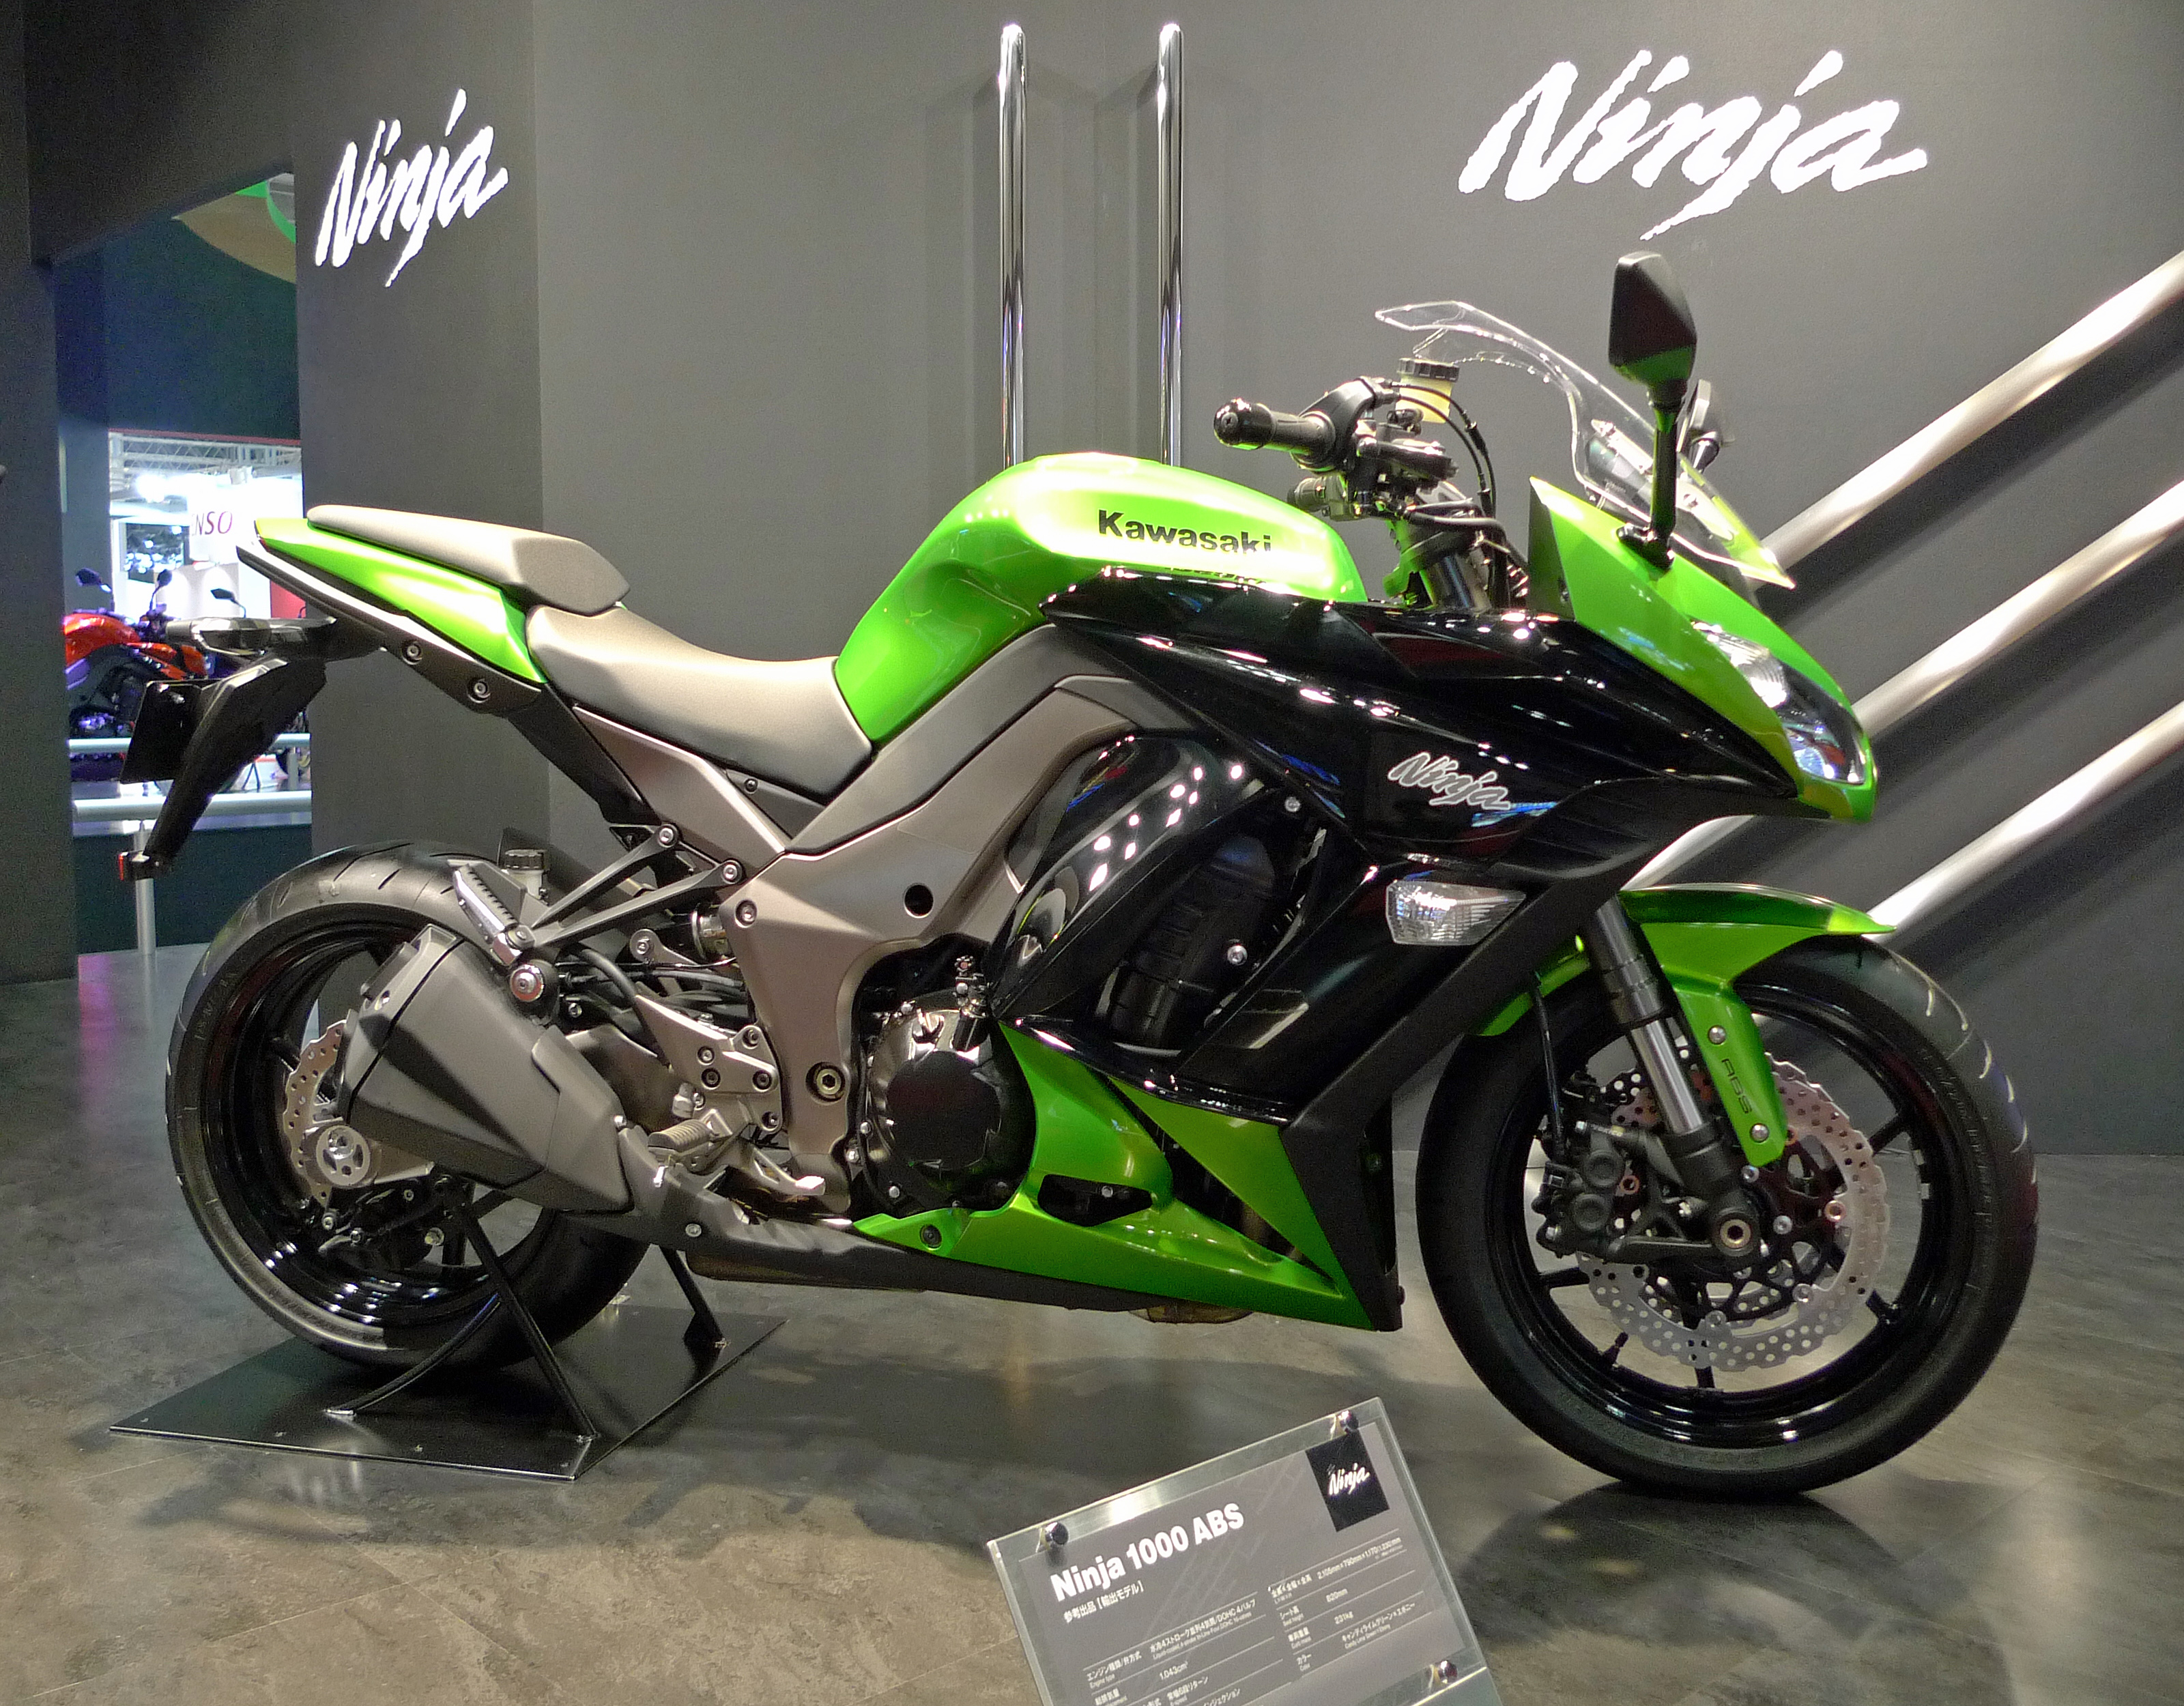 100 Gambar Motor Kawasaki Ninja New Terbaru Dan Terlengkap Gubuk